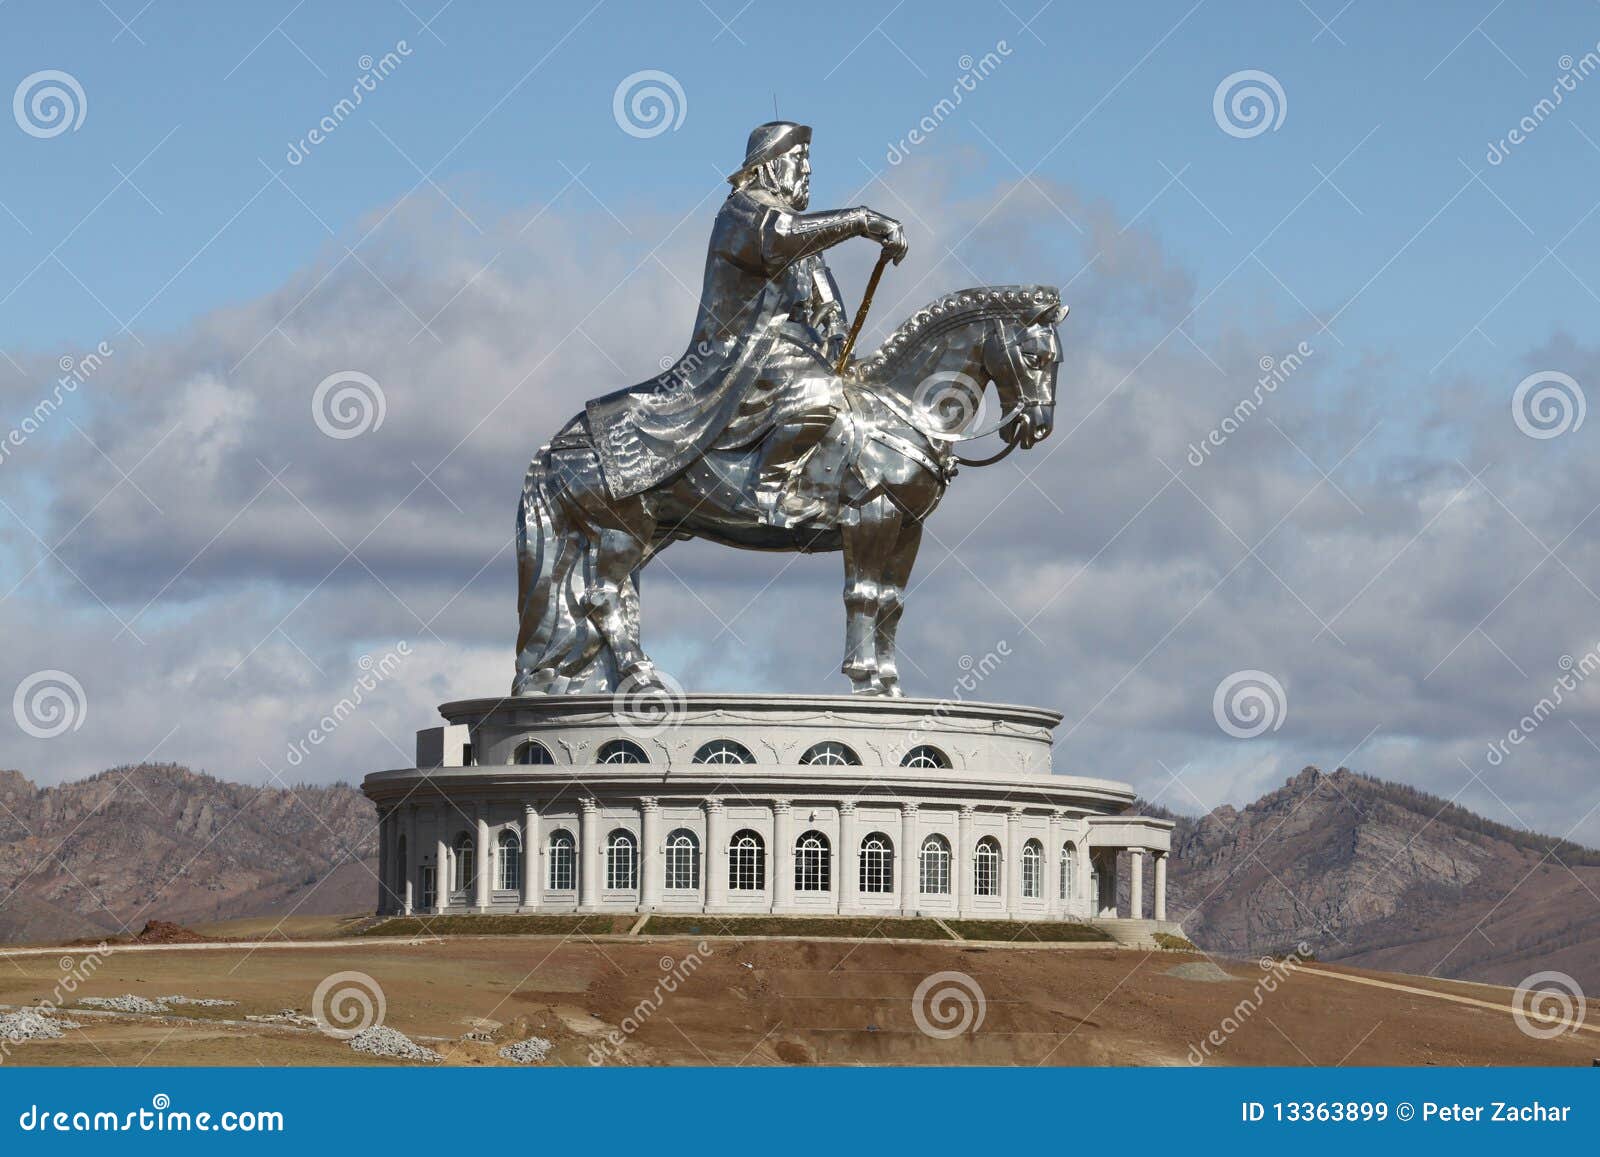 genghiskhan, mongolia